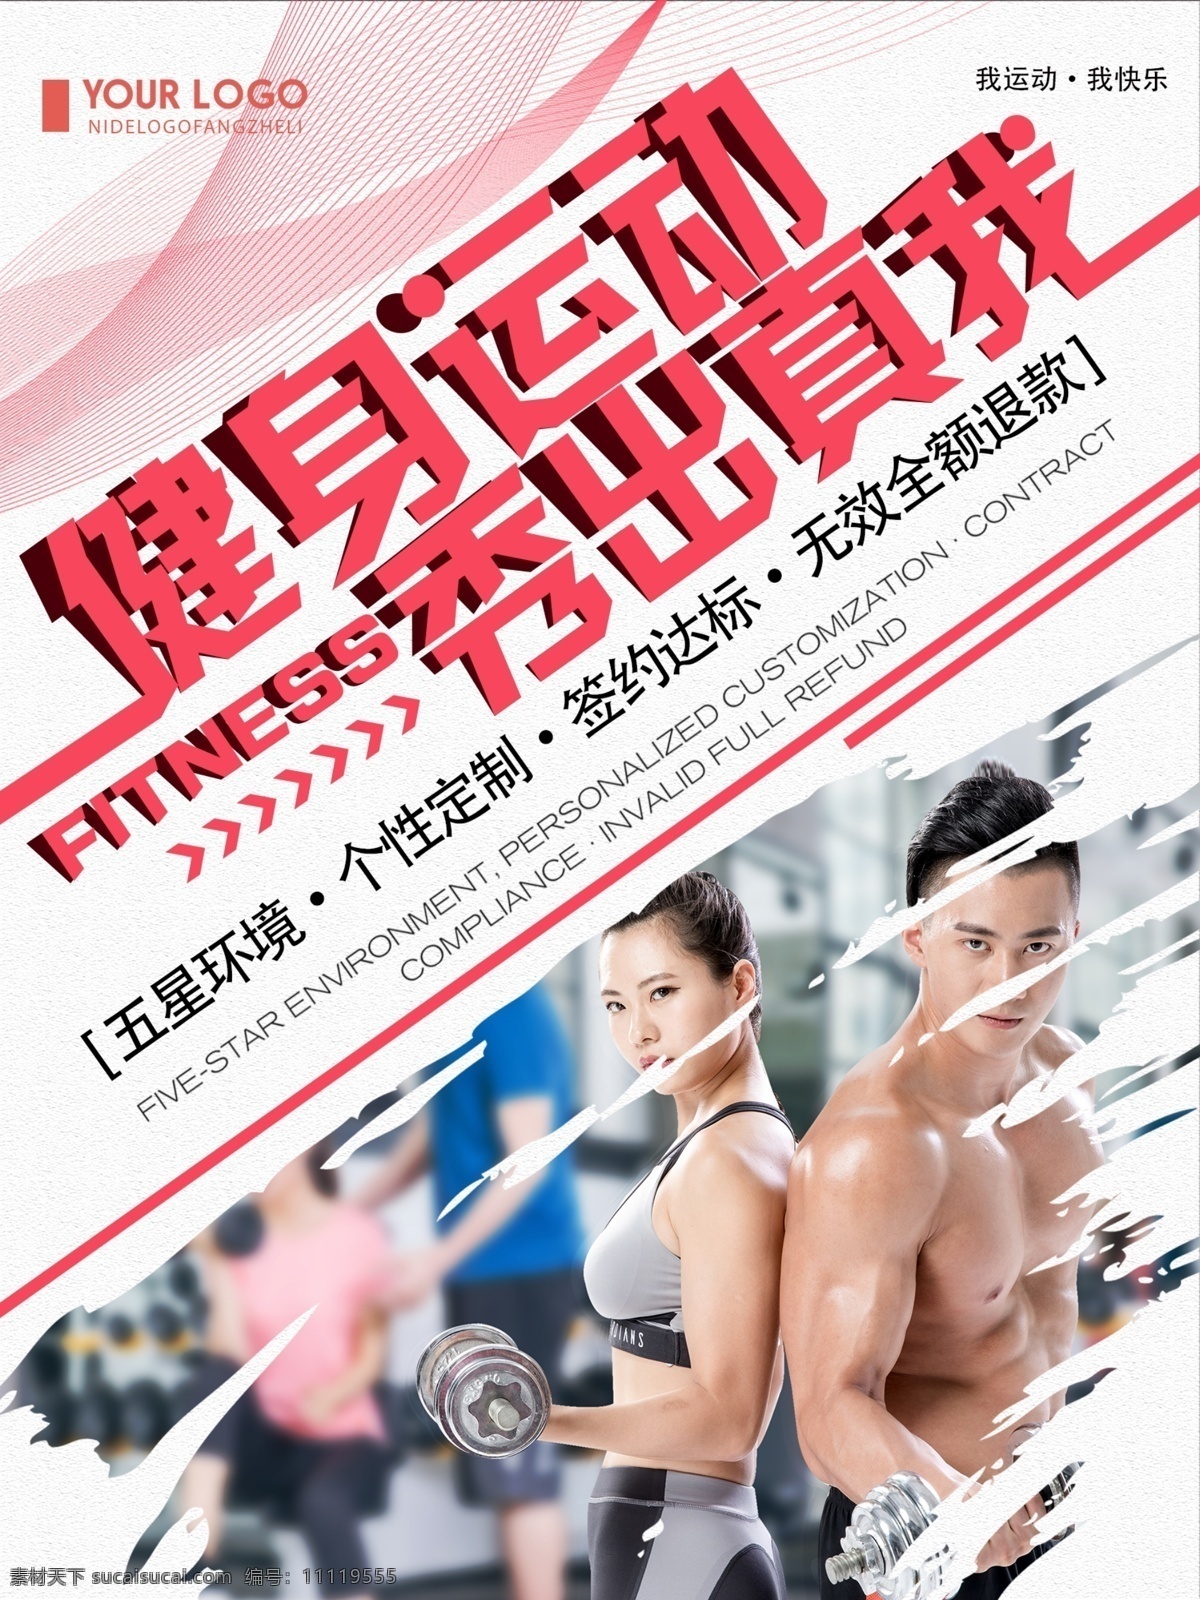 红色 创意 简约 健身 运动 秀 出 真 海报 运动海报 健身运动海报 体育宣传海报